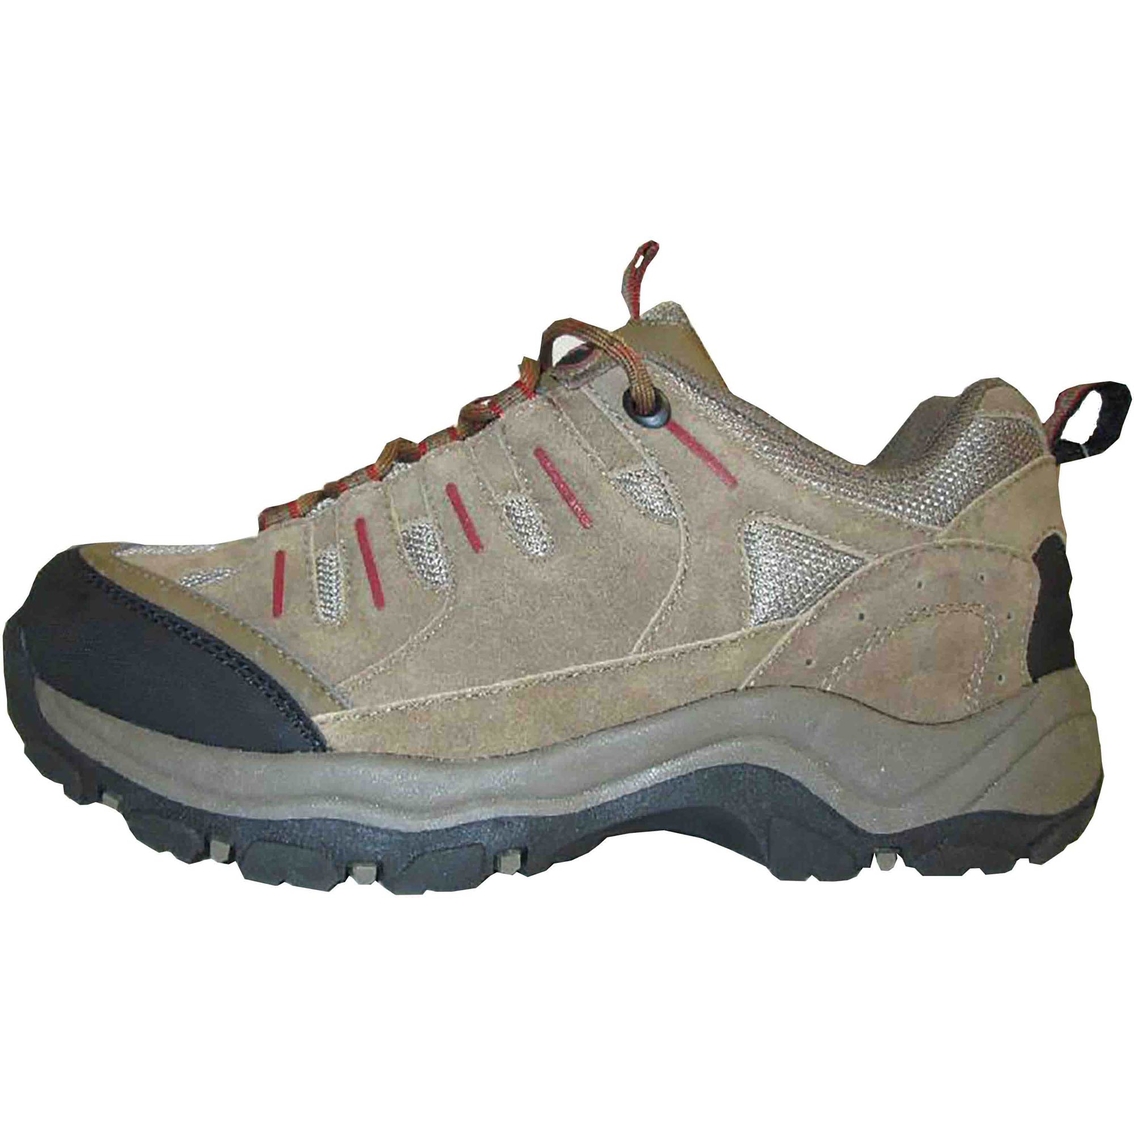 khombu hiking boots